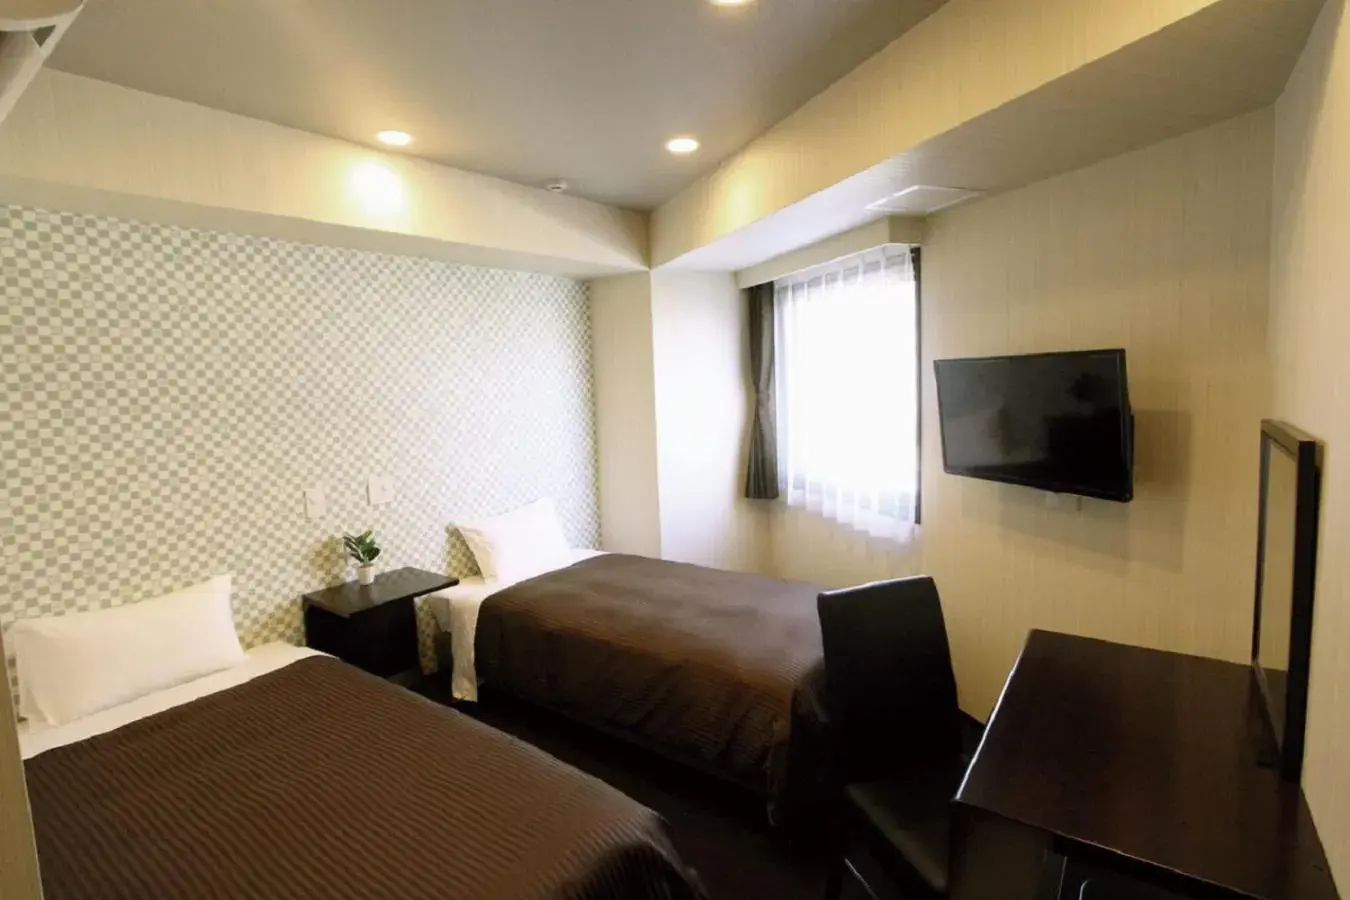 Bed in HOTEL LiVEMAX Nihonbashi Hakozaki